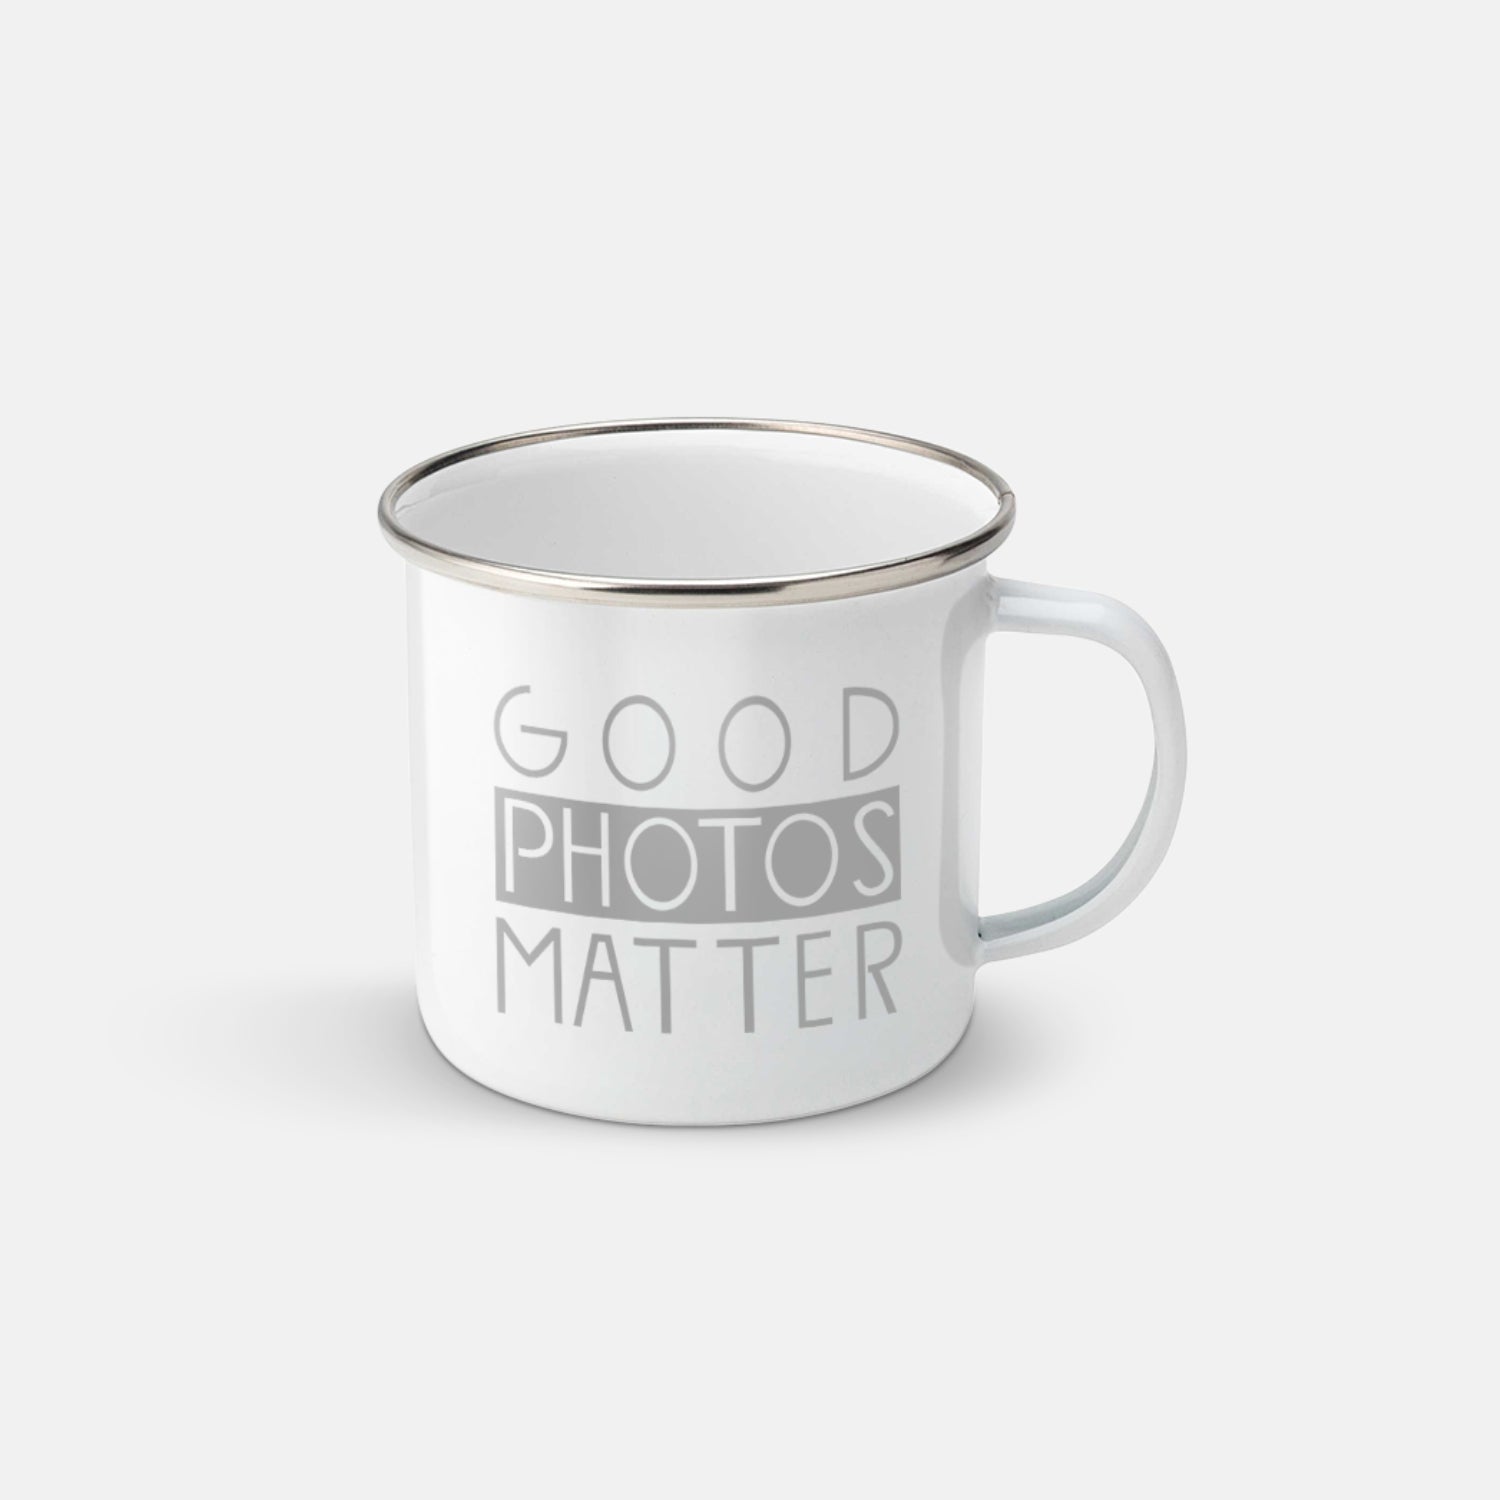 Tasse für Fotografen "Good Photos Matter"